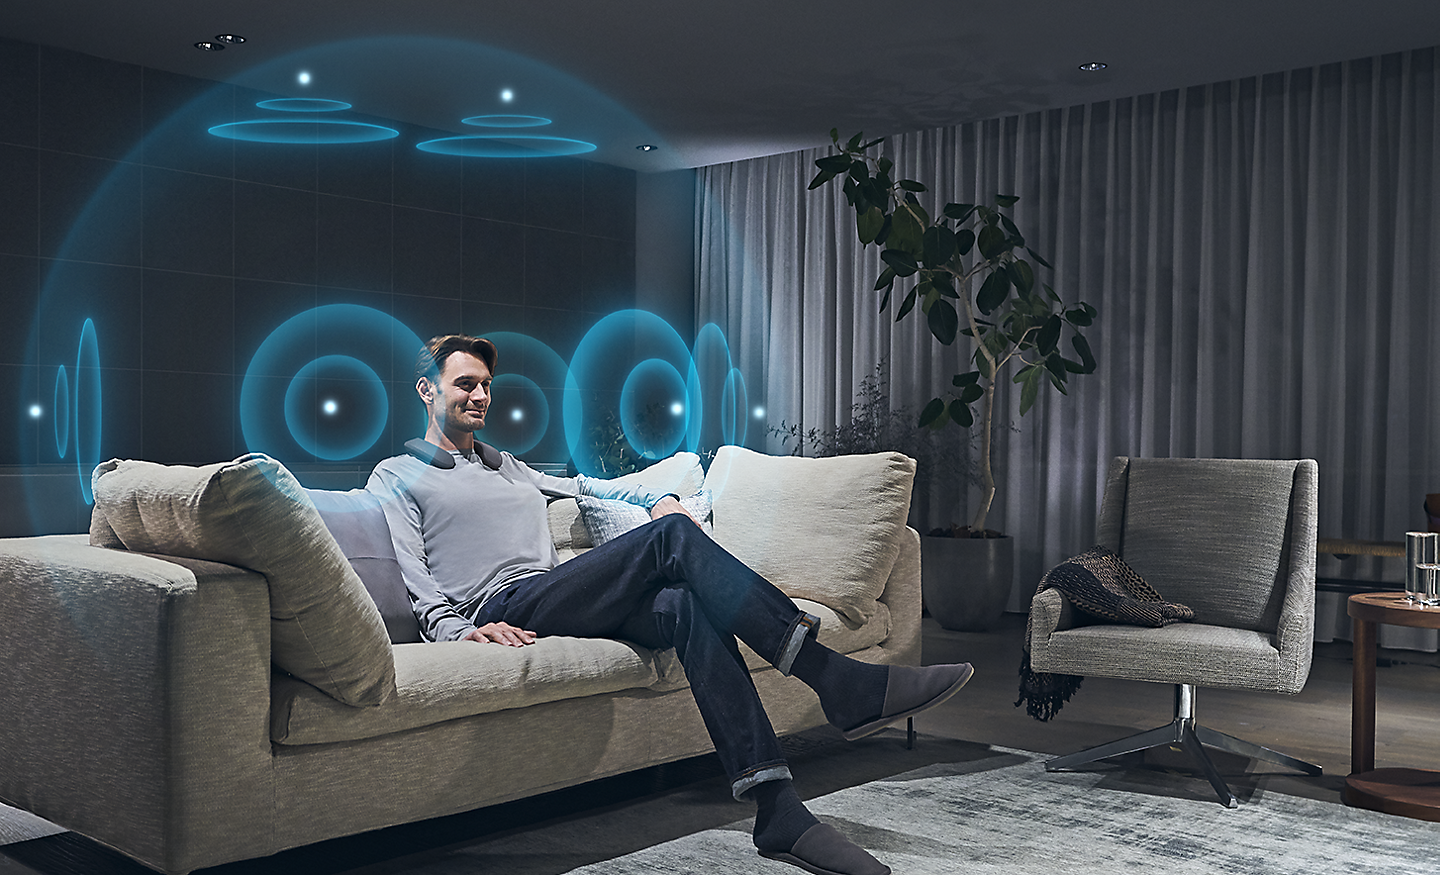 Slika muškarca u dnevnoj sobi s ilustriranim plavim zvučnim valovima koji predstavljaju 360 prostorni zvuk